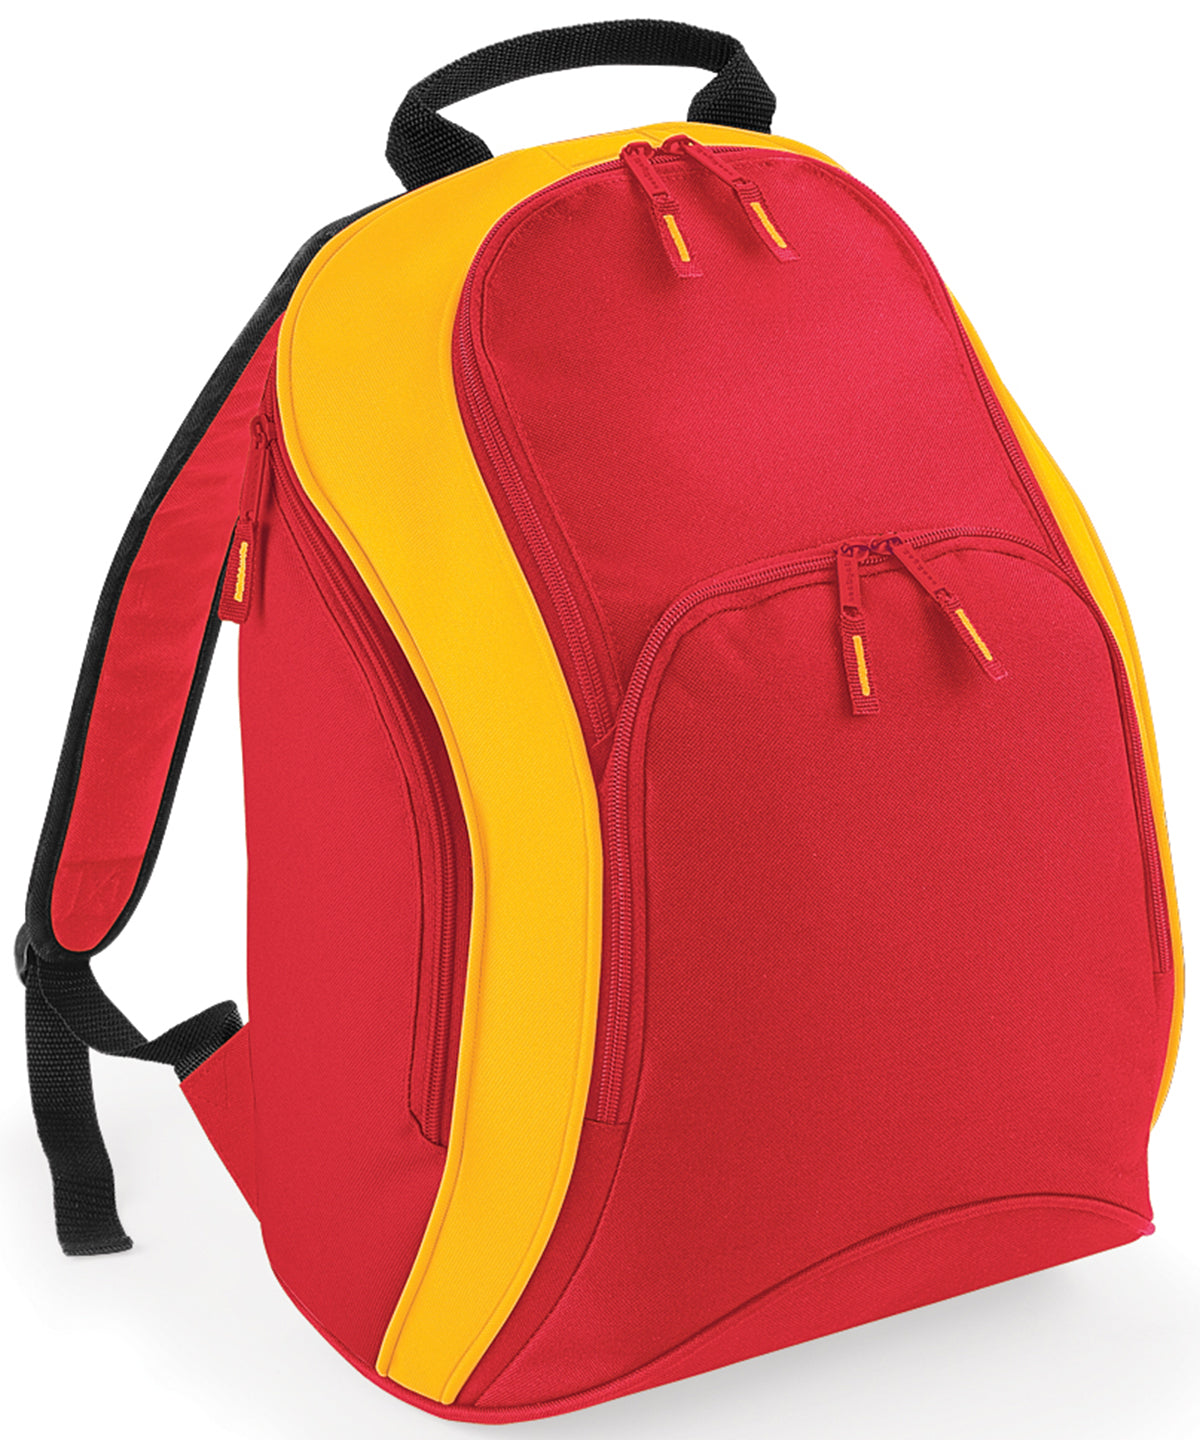 Töskur - Nation Backpack